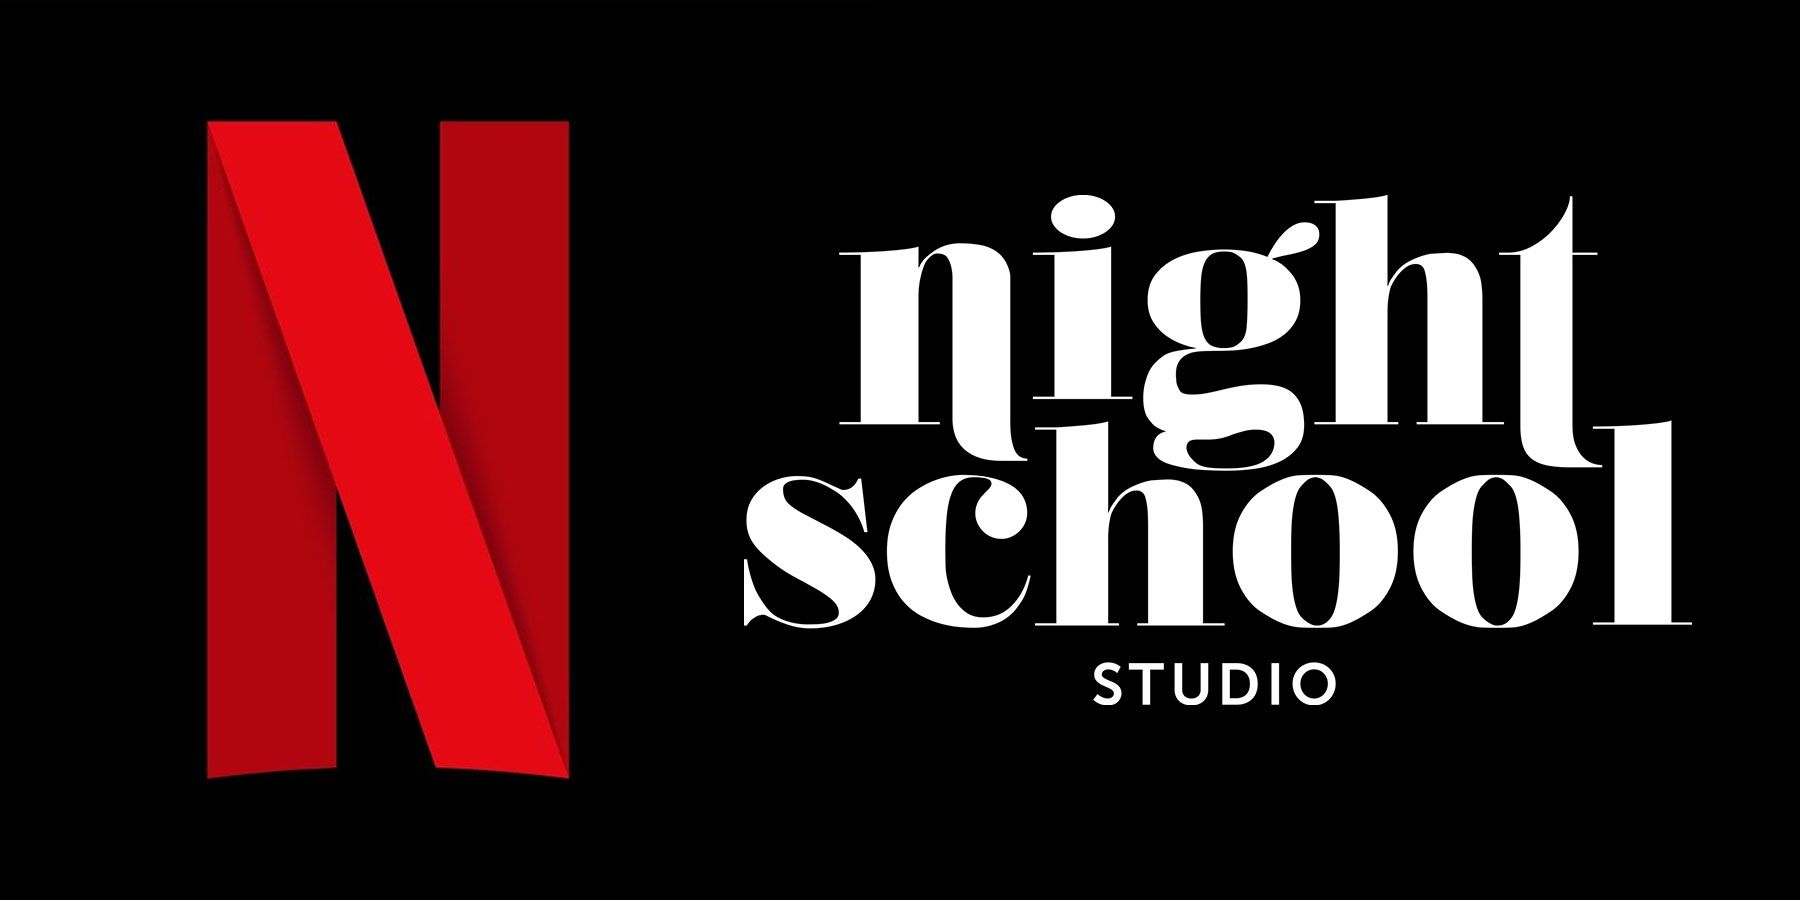 A Netflix Acquiring Night School Studio jó jel a streamelési ambícióihoz